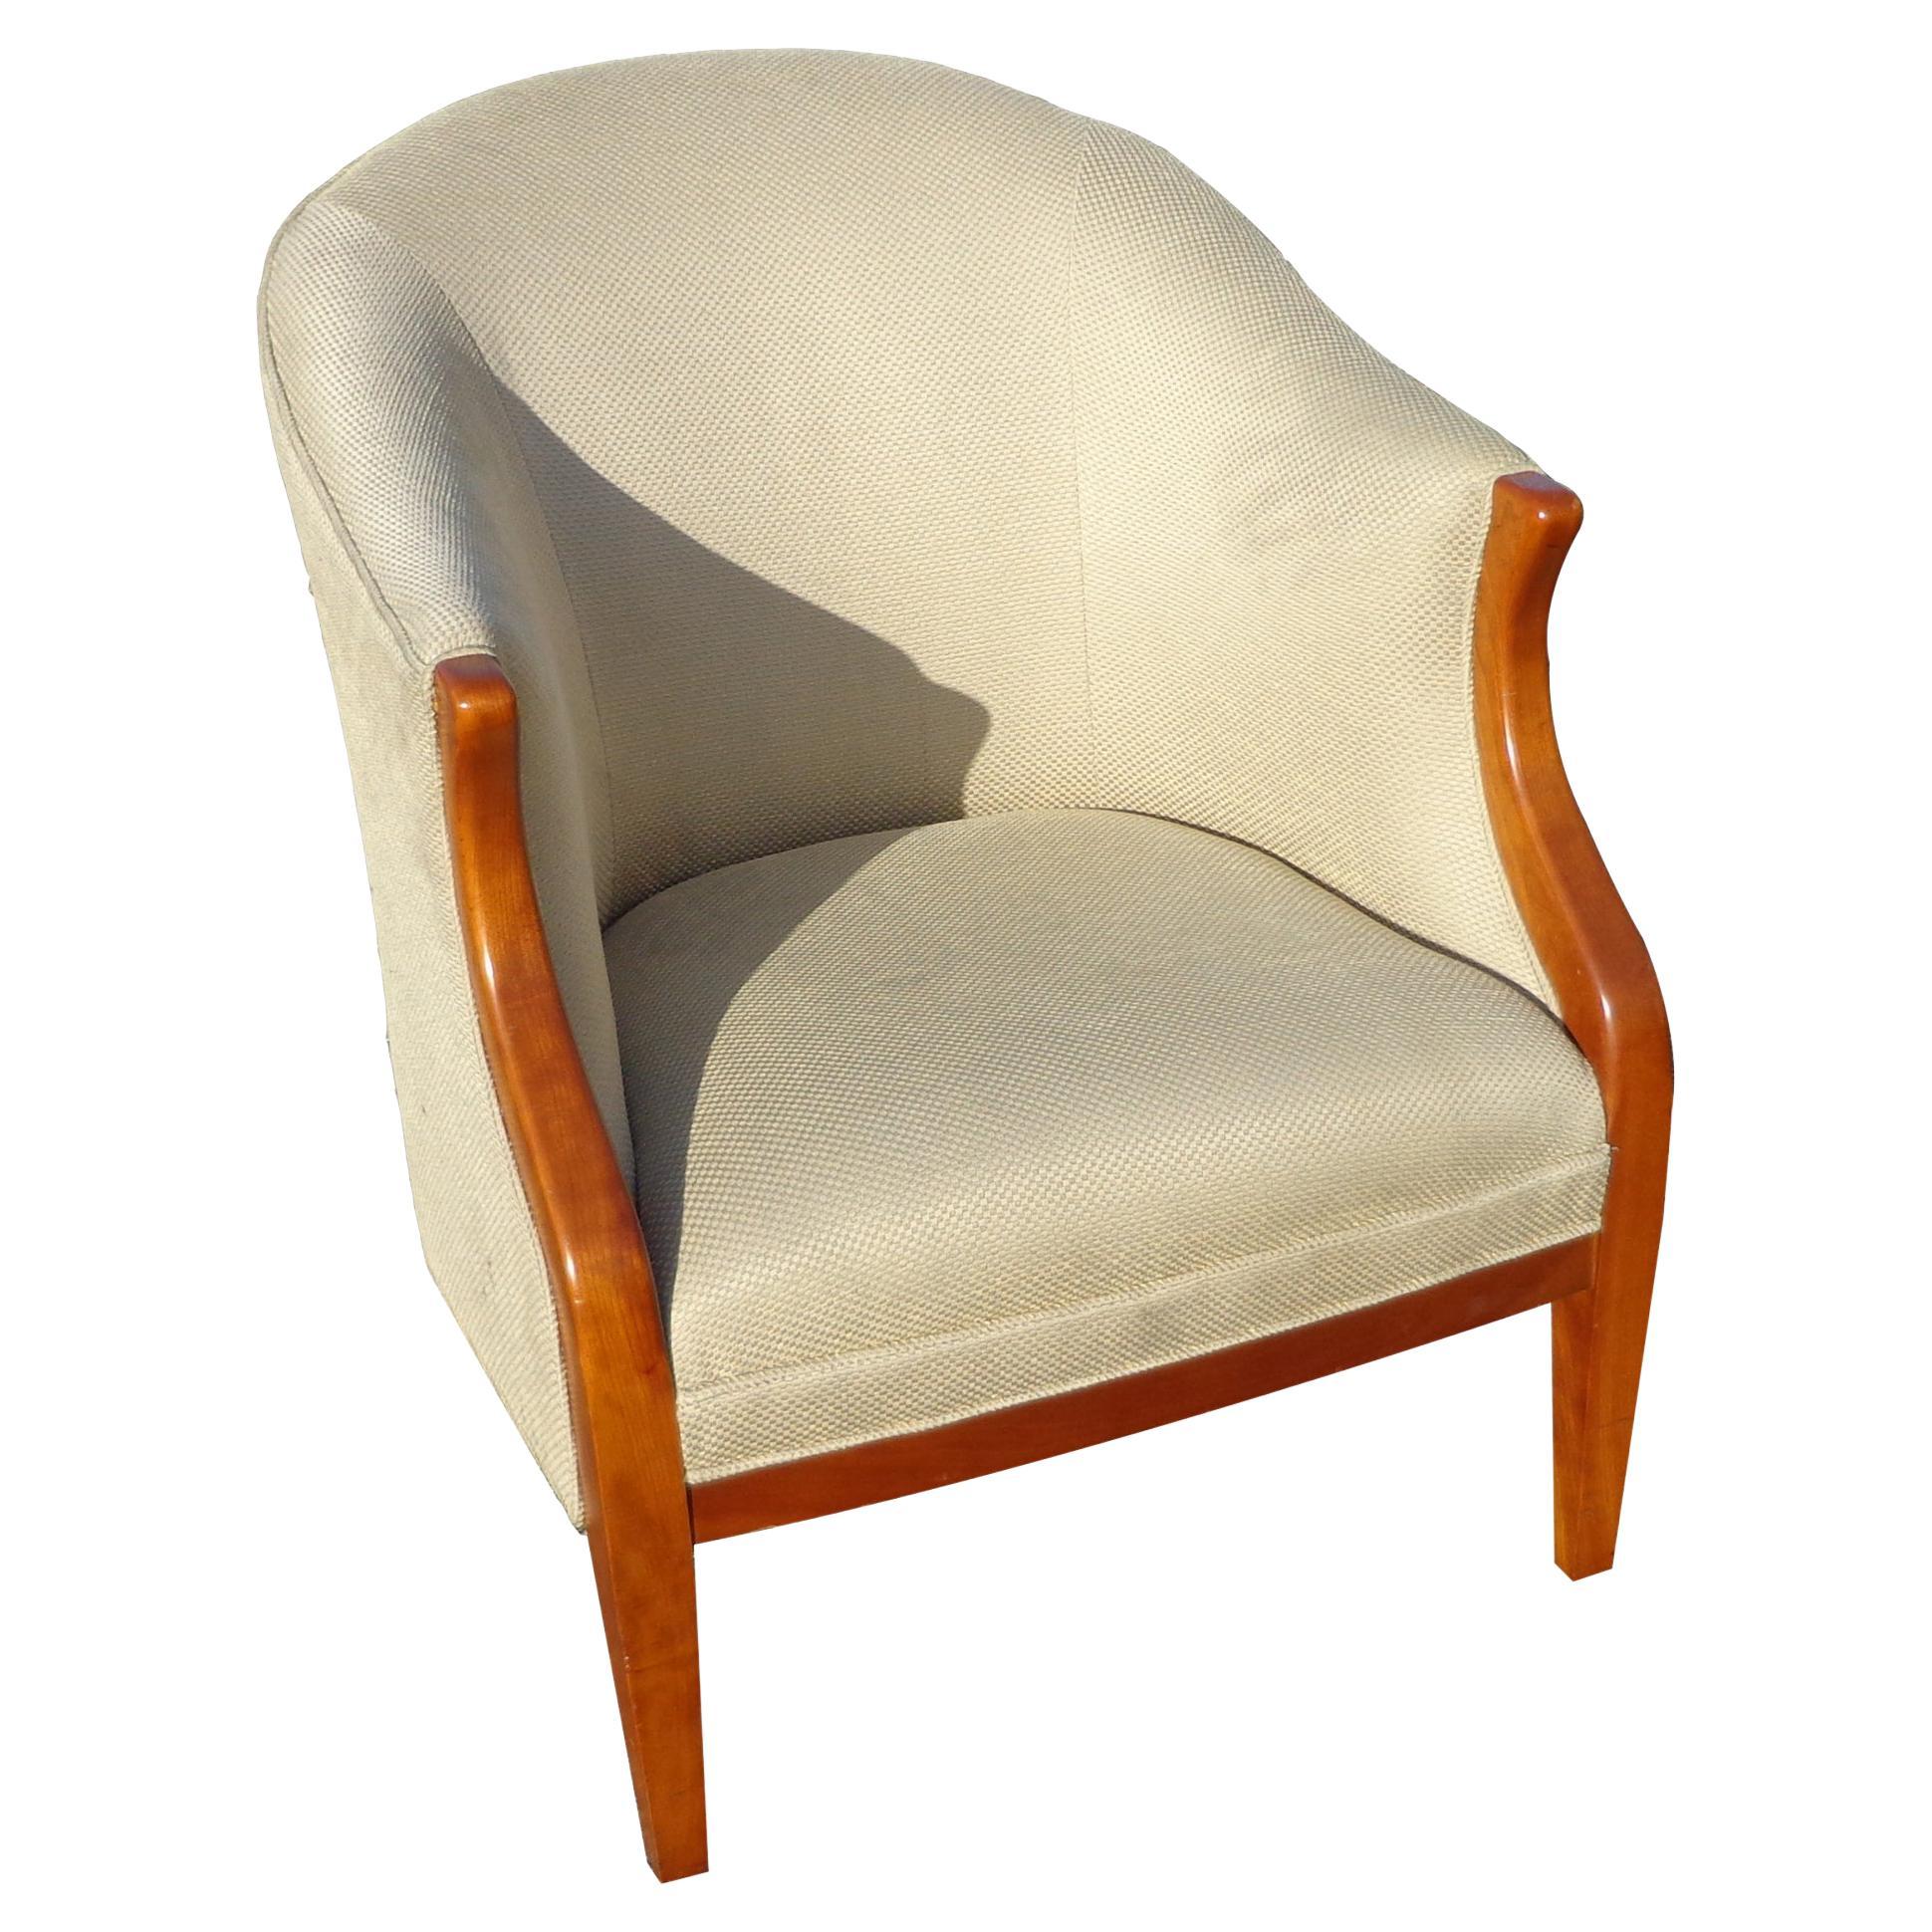 Chaise longue HBF

De merveilleuses courbes et lignes dans cette version moderne d'un modèle traditionnel et classique
chaise longue de HBF. Cadre en noyer et tapisserie en soie ivoire.